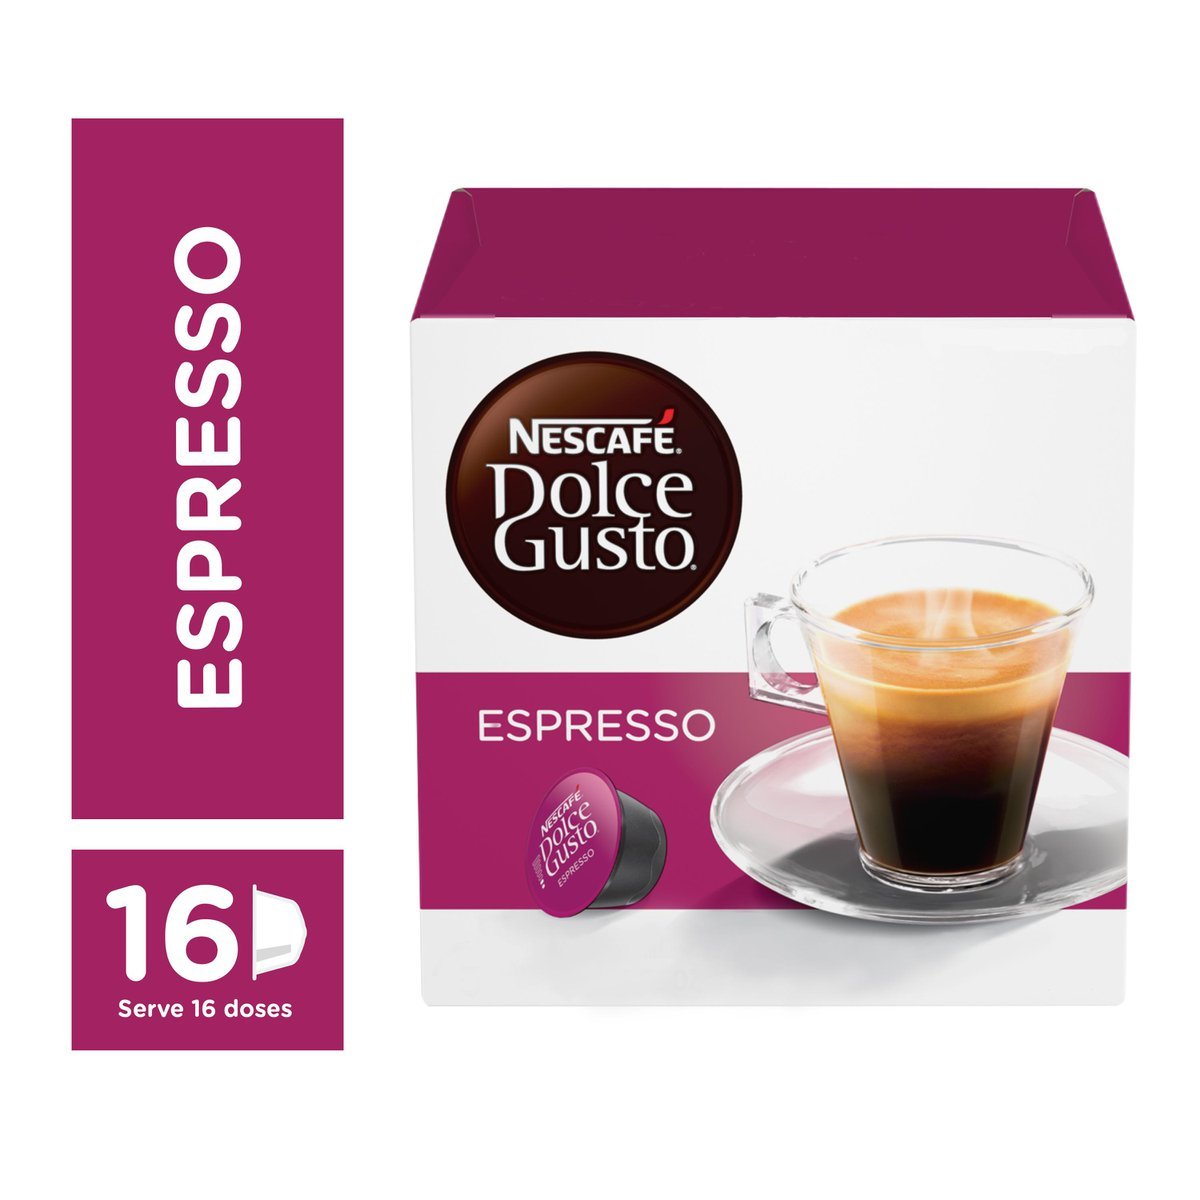 Nescafe Dolce gusto Espresso. Dolce gusto Espresso. Nescafe Espresso. Адаптер Дольче густо на эспрессо.